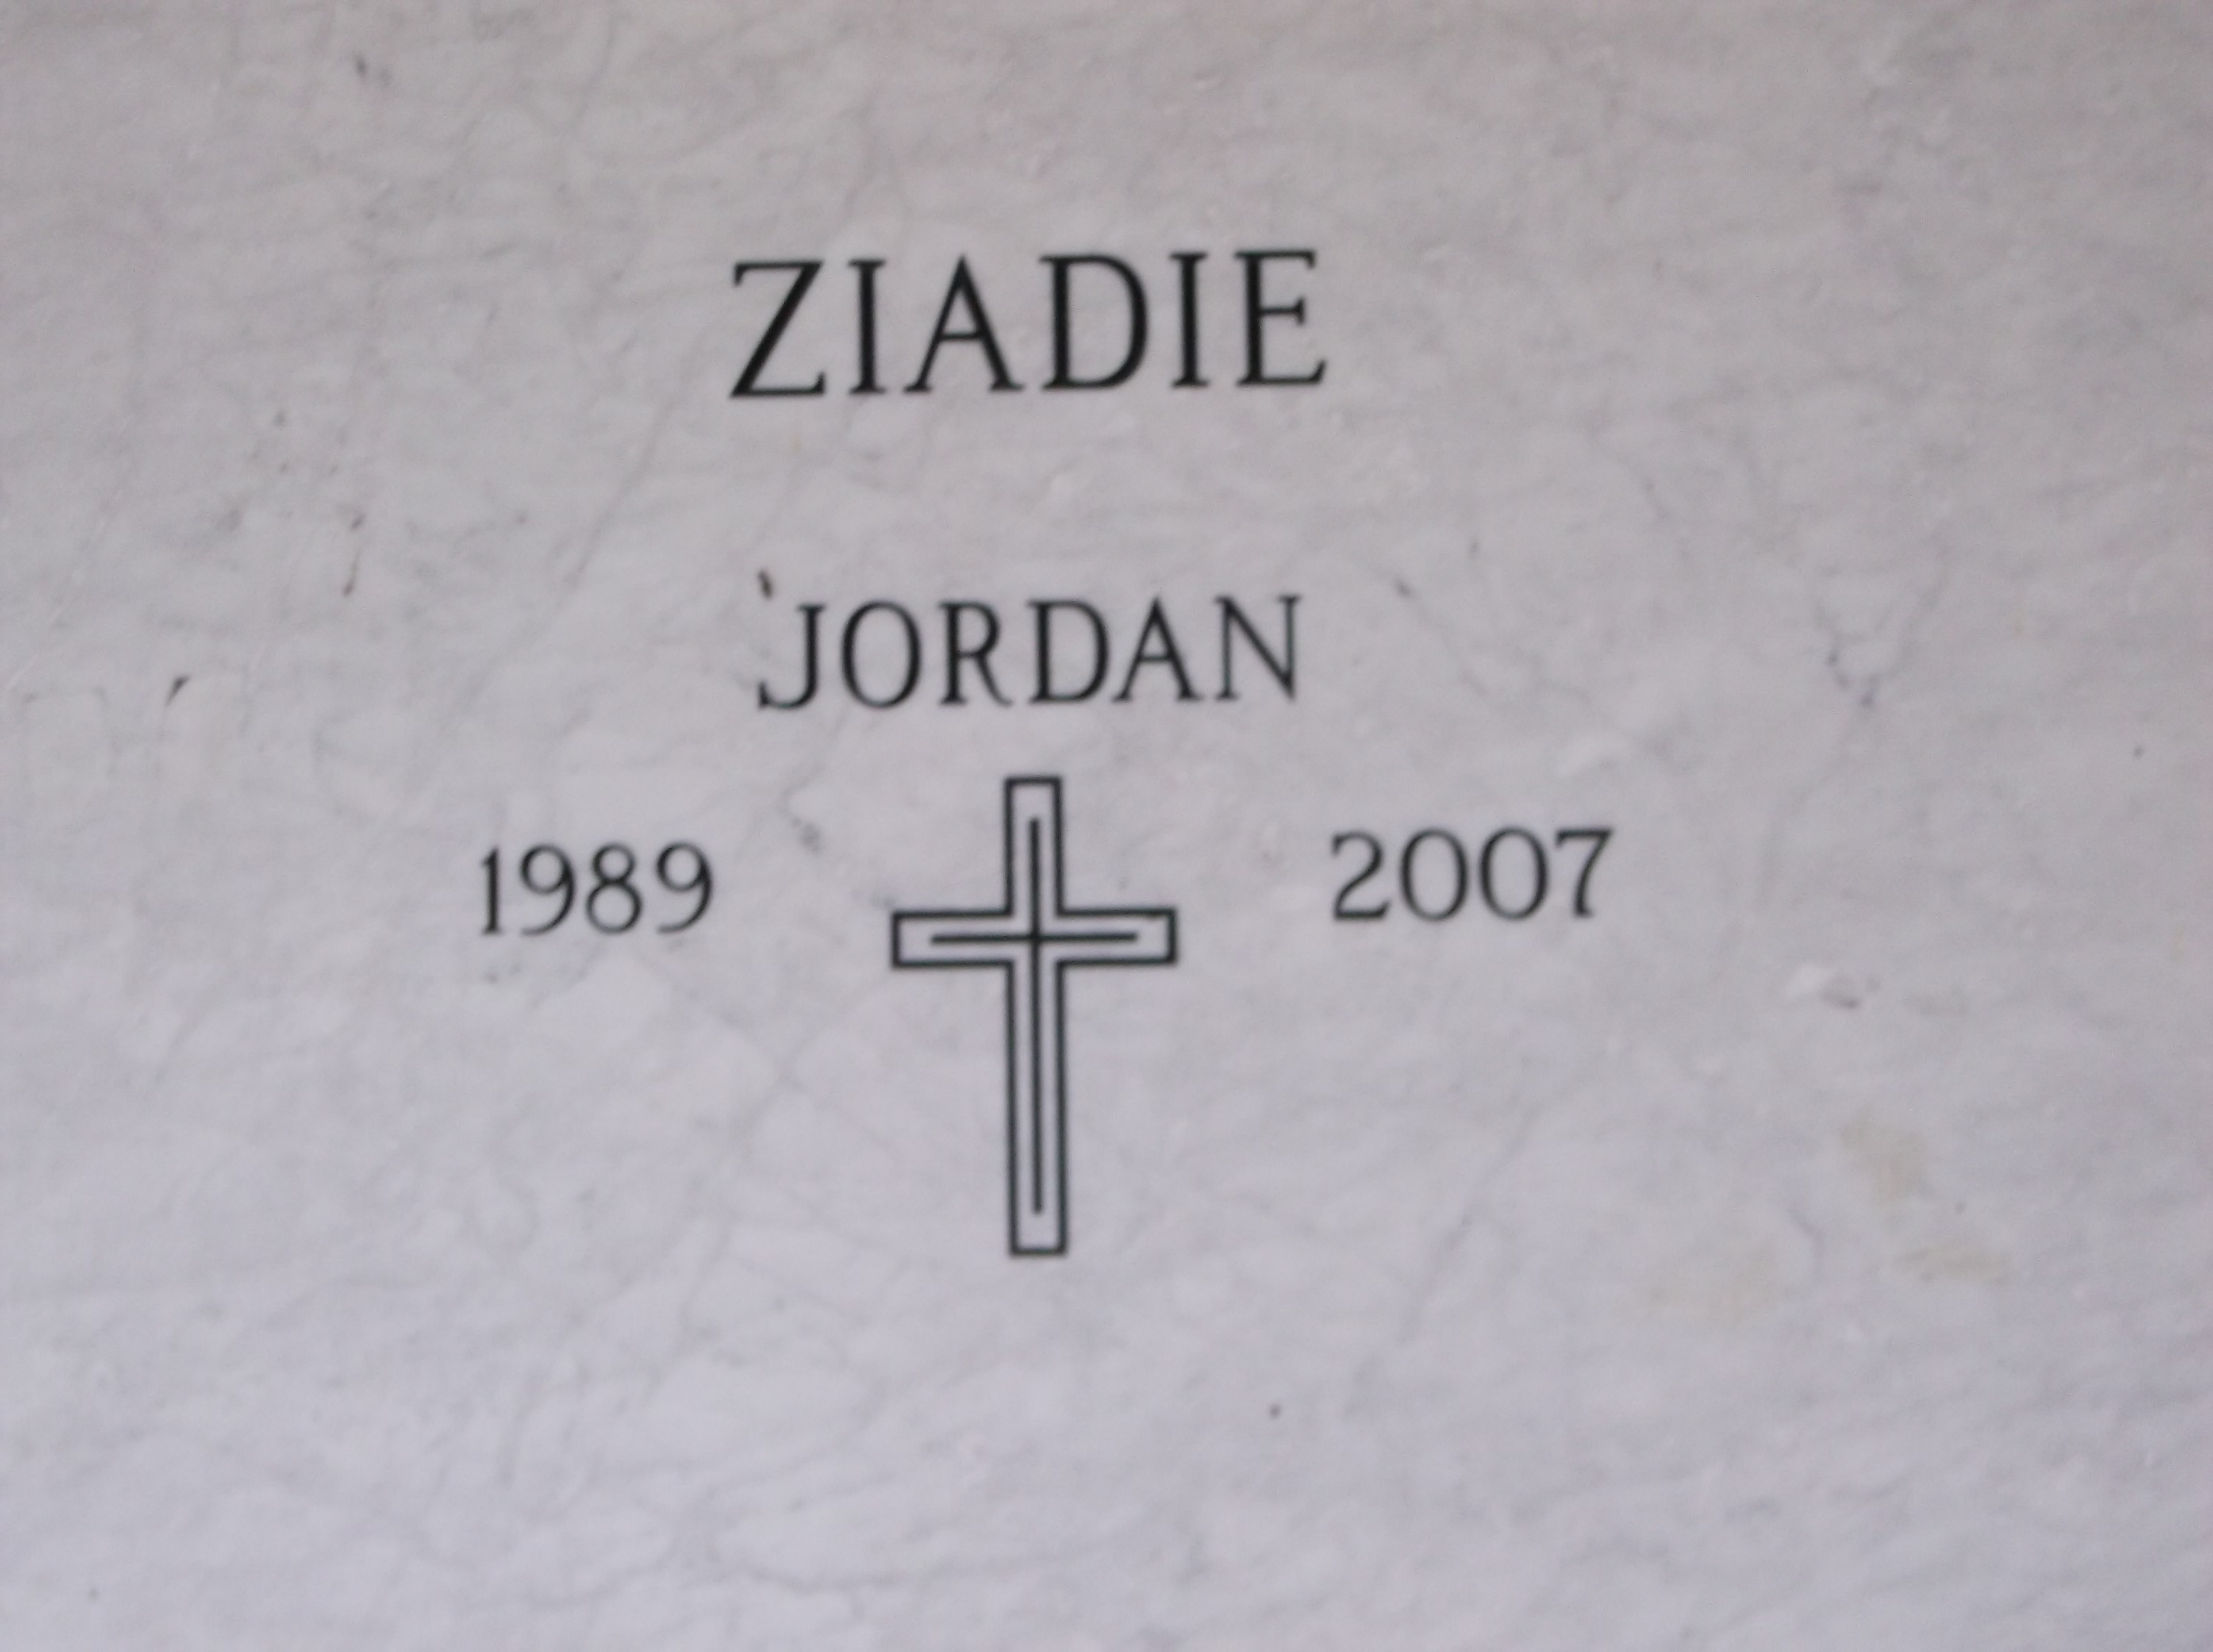 Jordan Ziadie